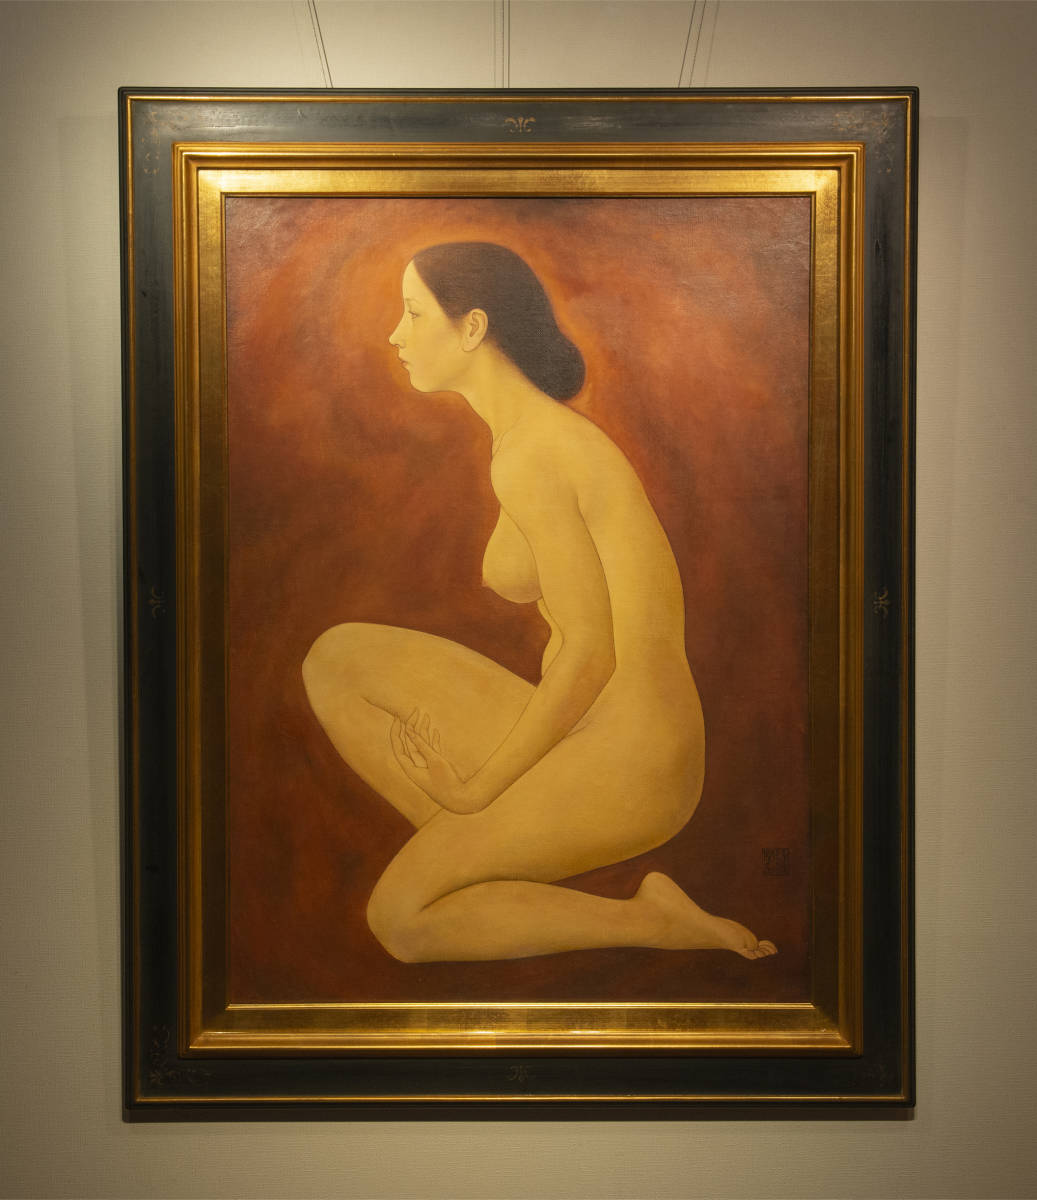 Xue Yanqun, 1987, Kniender weiblicher Körper, ausgestellt auf der China Jiade Exhibition, Ölgemälde, gerahmt, zertifiziert authentisch, Chinesisch, Malerei, zeitgenössische Kunst, Malerei, Ölgemälde, Porträts